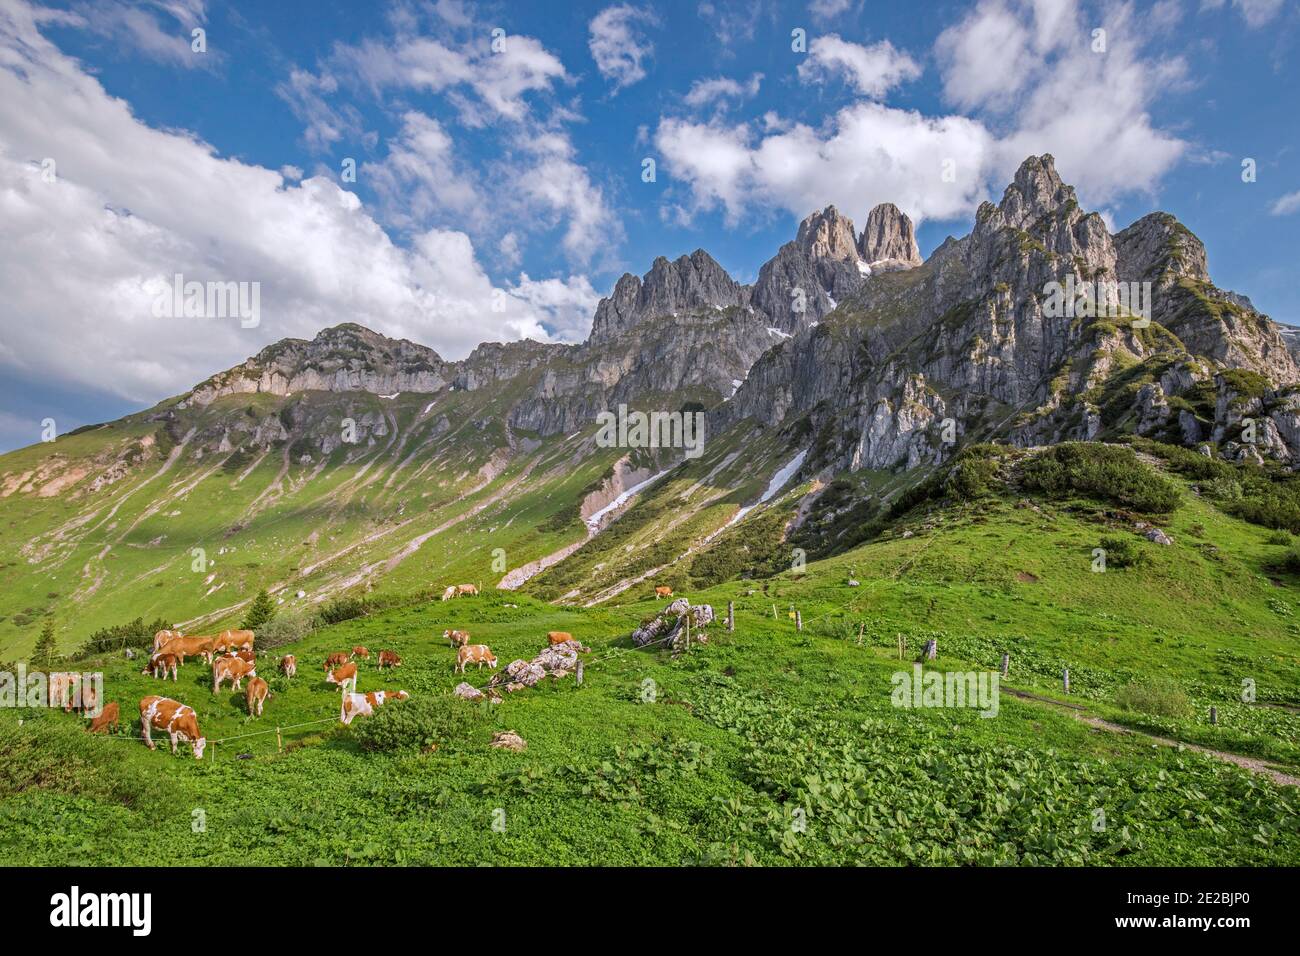 Le mucche alpine e la montagna Große Bischofsmütze / Bischofsmuetze, Gosaukamm, Dachstein, alta Stiria / Steiermark, Austria Foto Stock